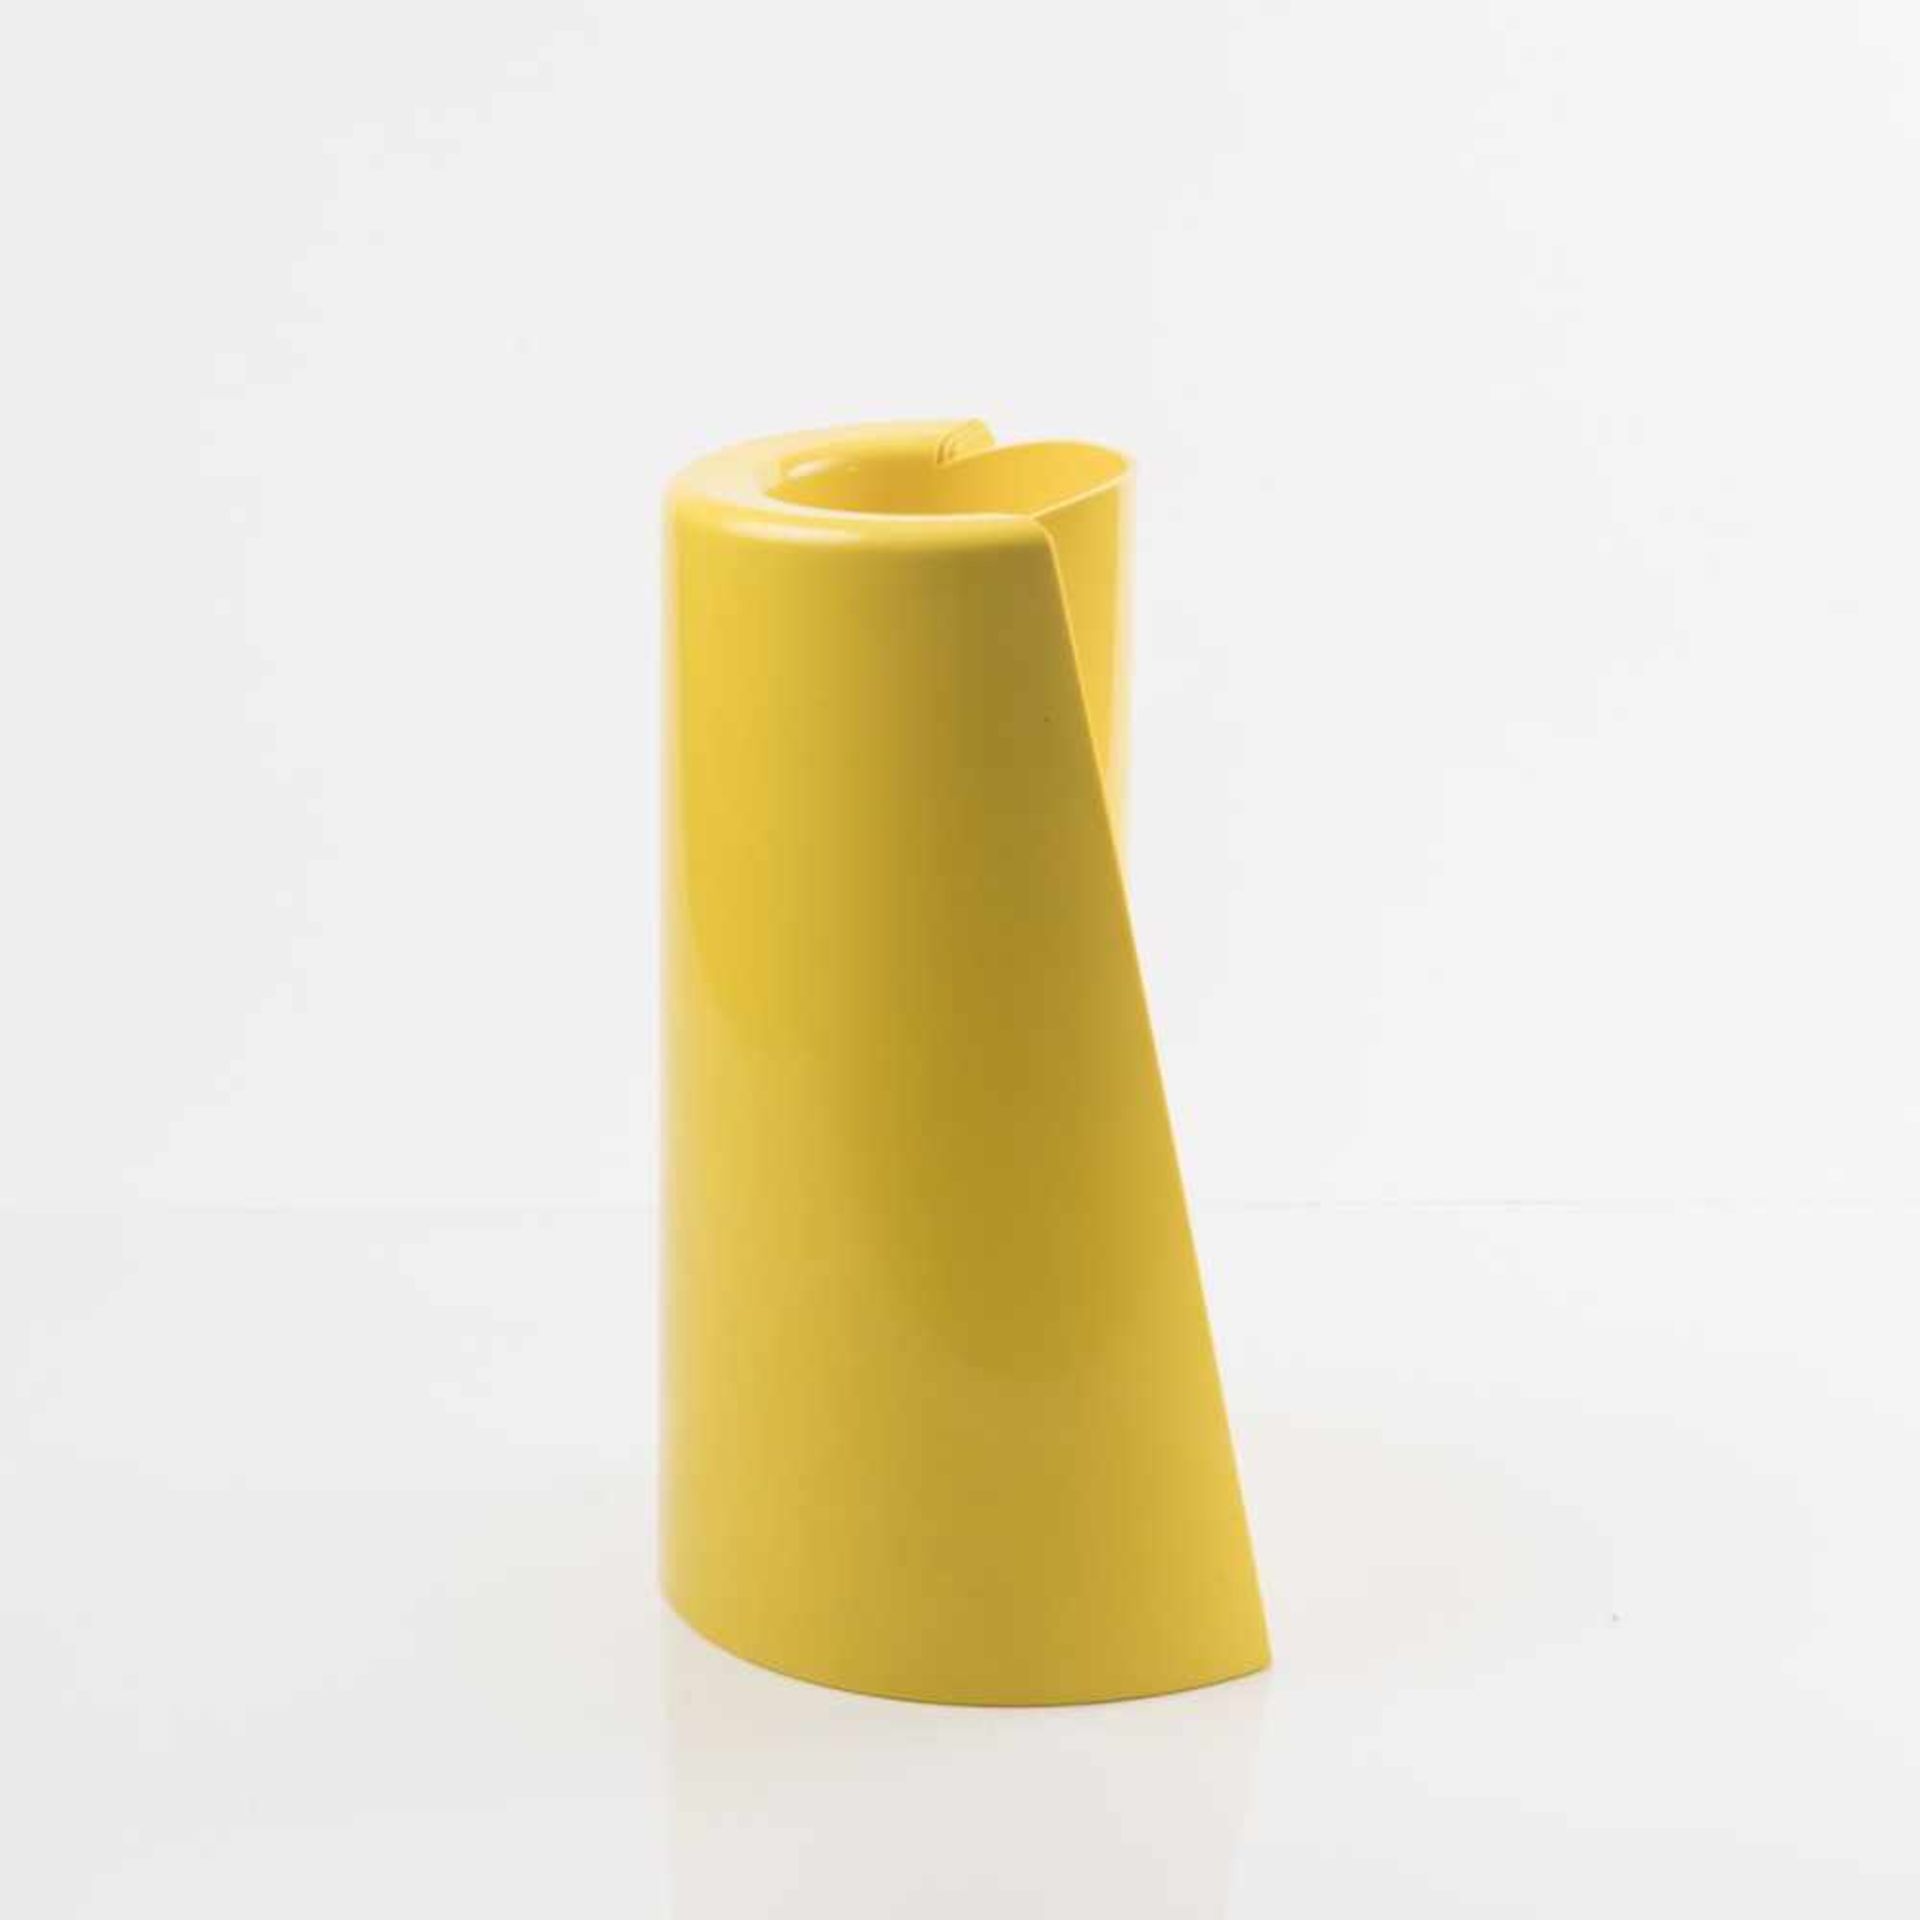 Enzo Mari, 'Pago Pago' vase, 1969Enzo Mari, 'Pago Pago' vase, 1969, H. 39 cm, D. 20 cm. Model 3087A. - Bild 4 aus 6